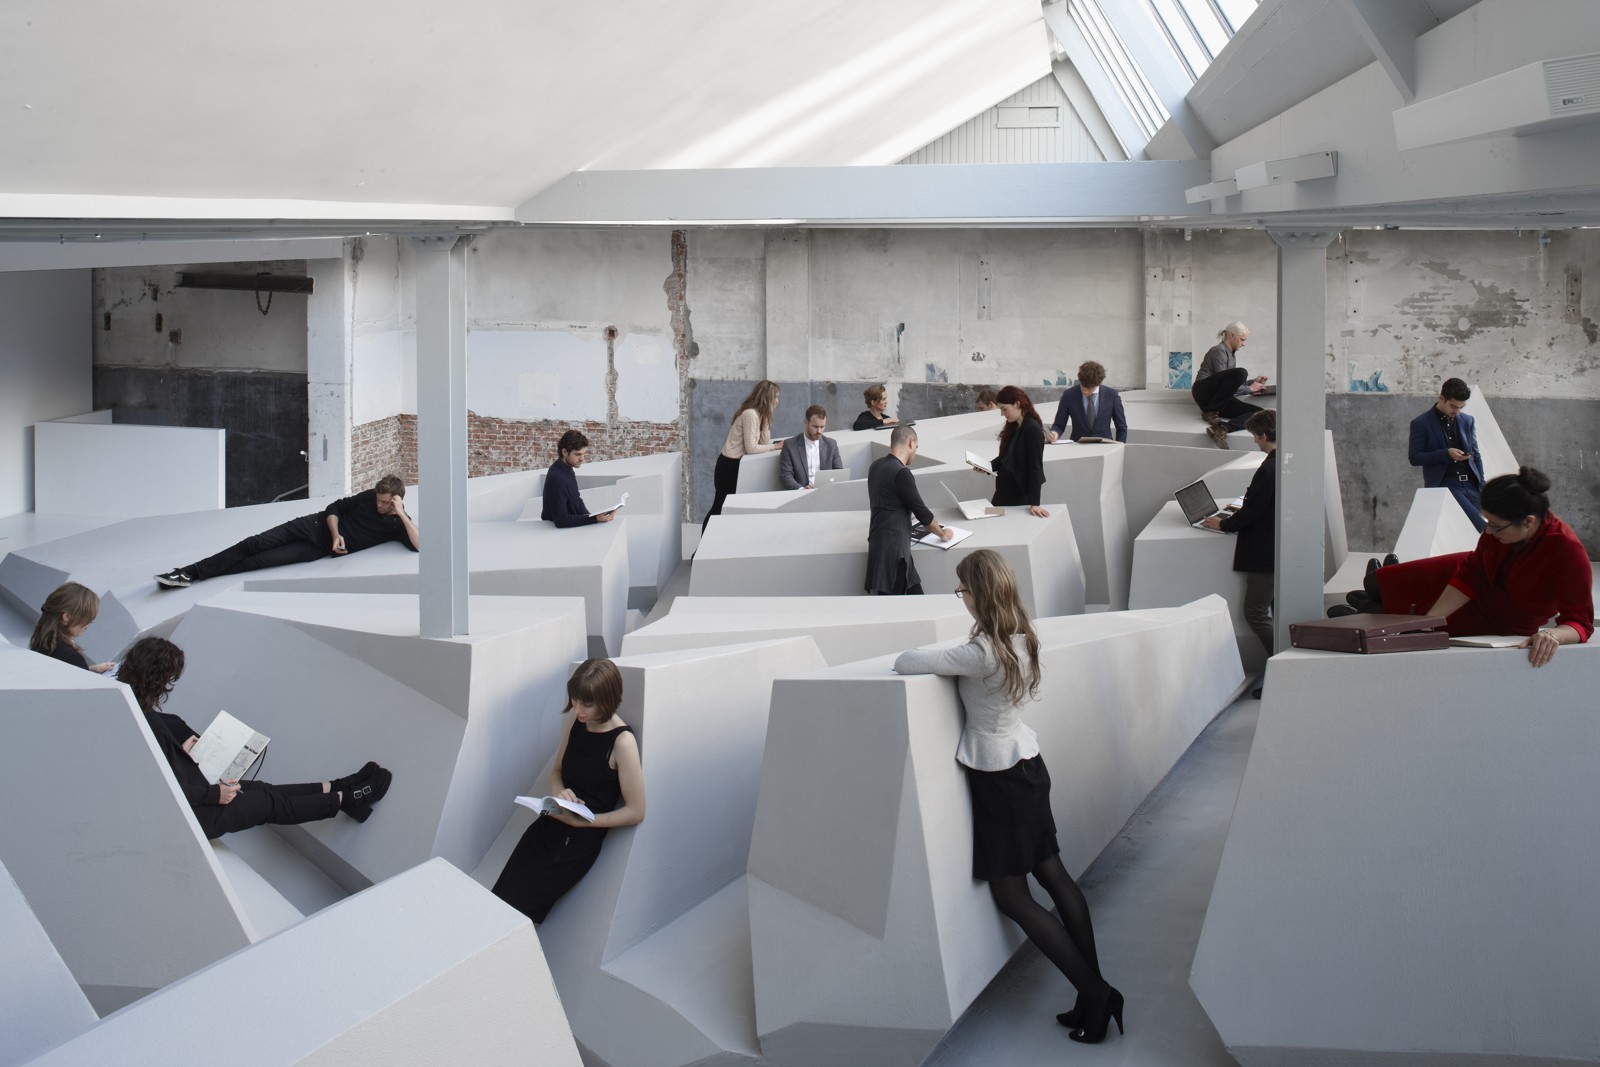 Büro ohne Stühle und Tische: Kunstinstallation zum Ende des Sitzens